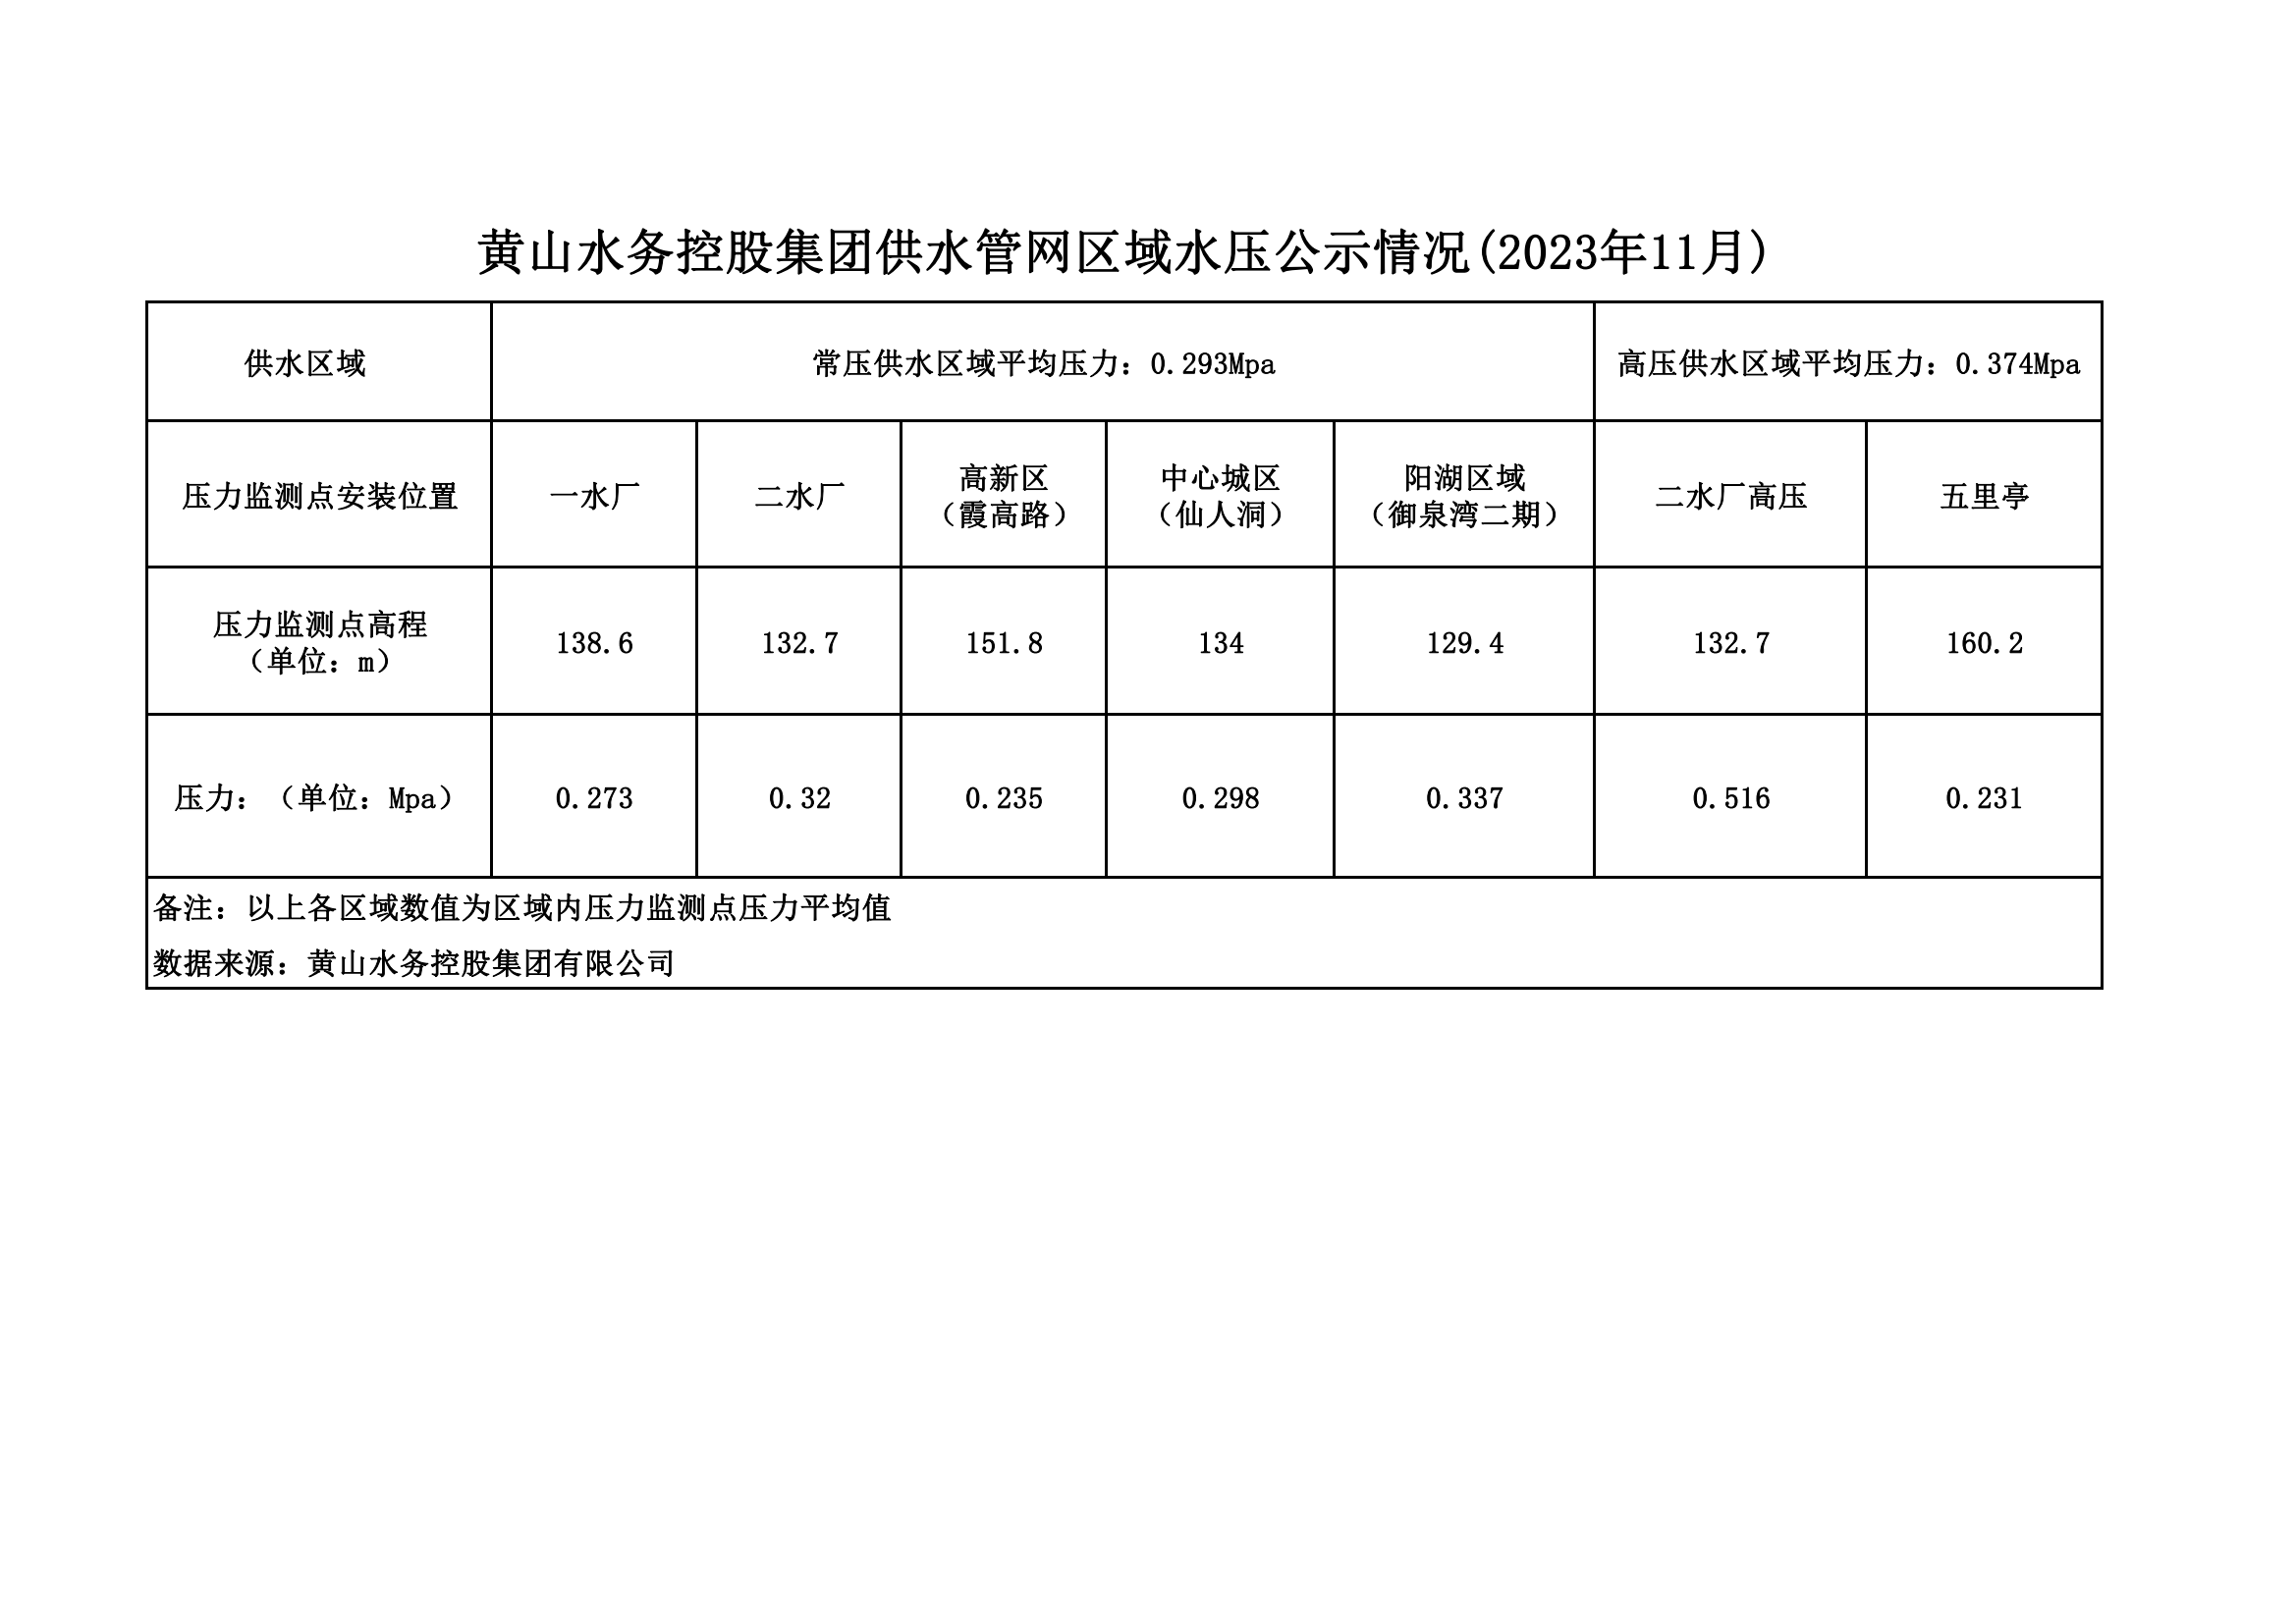 黄山水务控股集团供水管网区域水压公示情况(2023年11月)_00.png